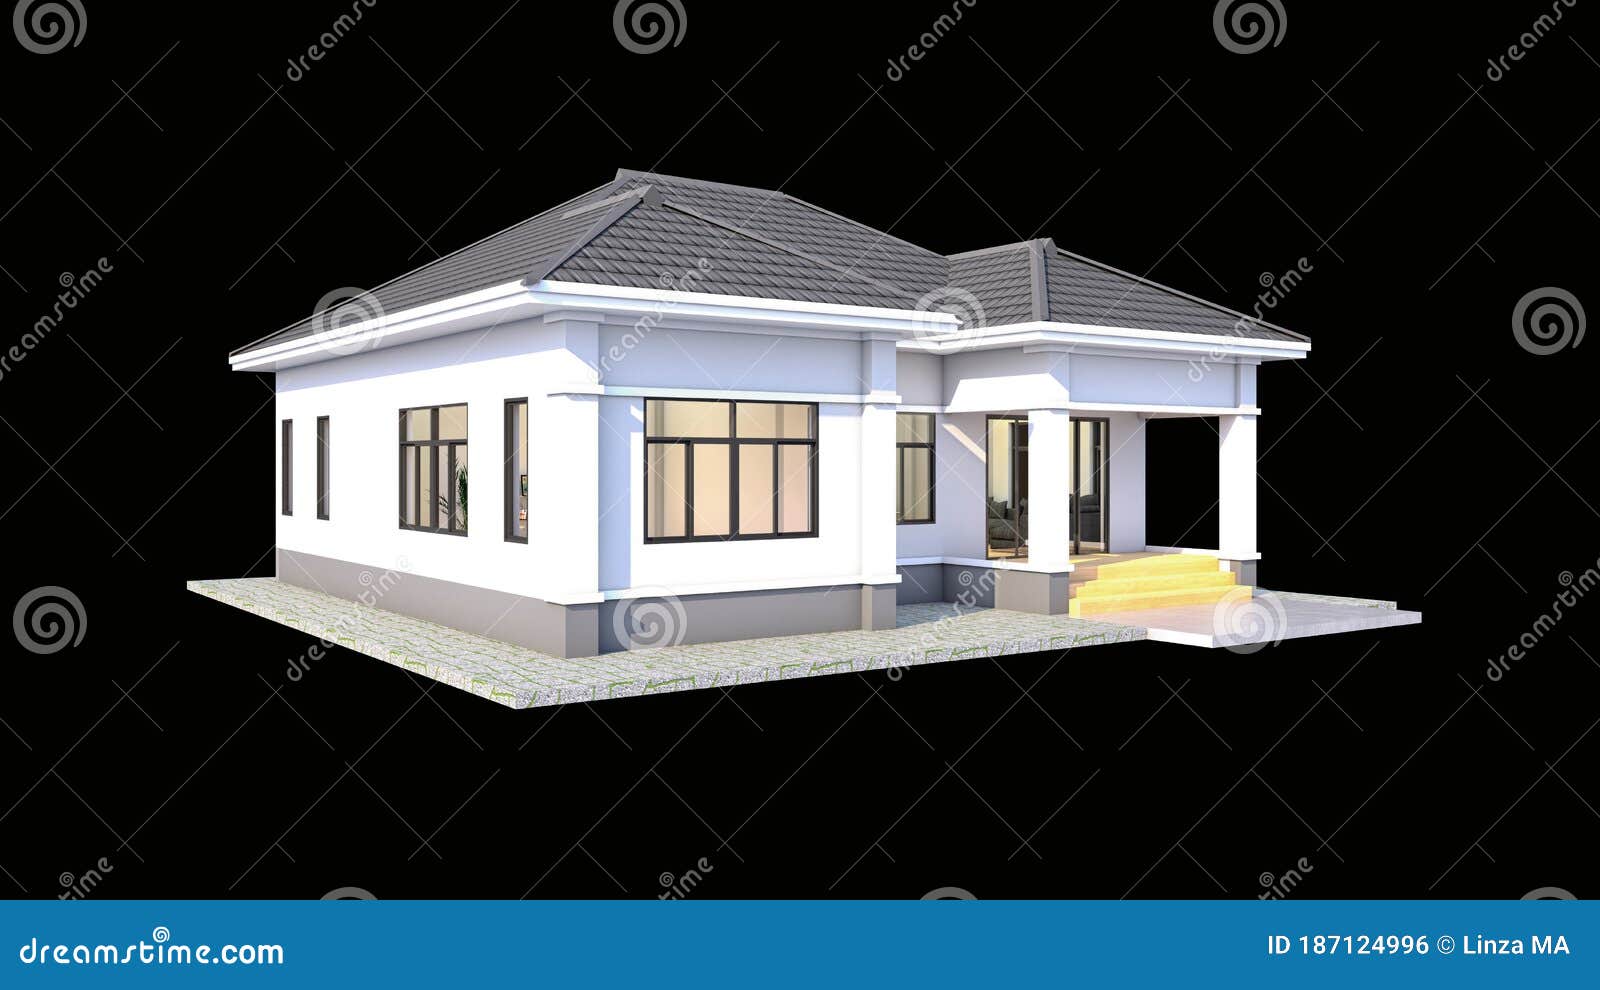 Moderner Entwurf Der Thailandischen Art Des Hauses Mit Doppeldach Stock Abbildung Illustration Von Mode Siamesisch 187124996